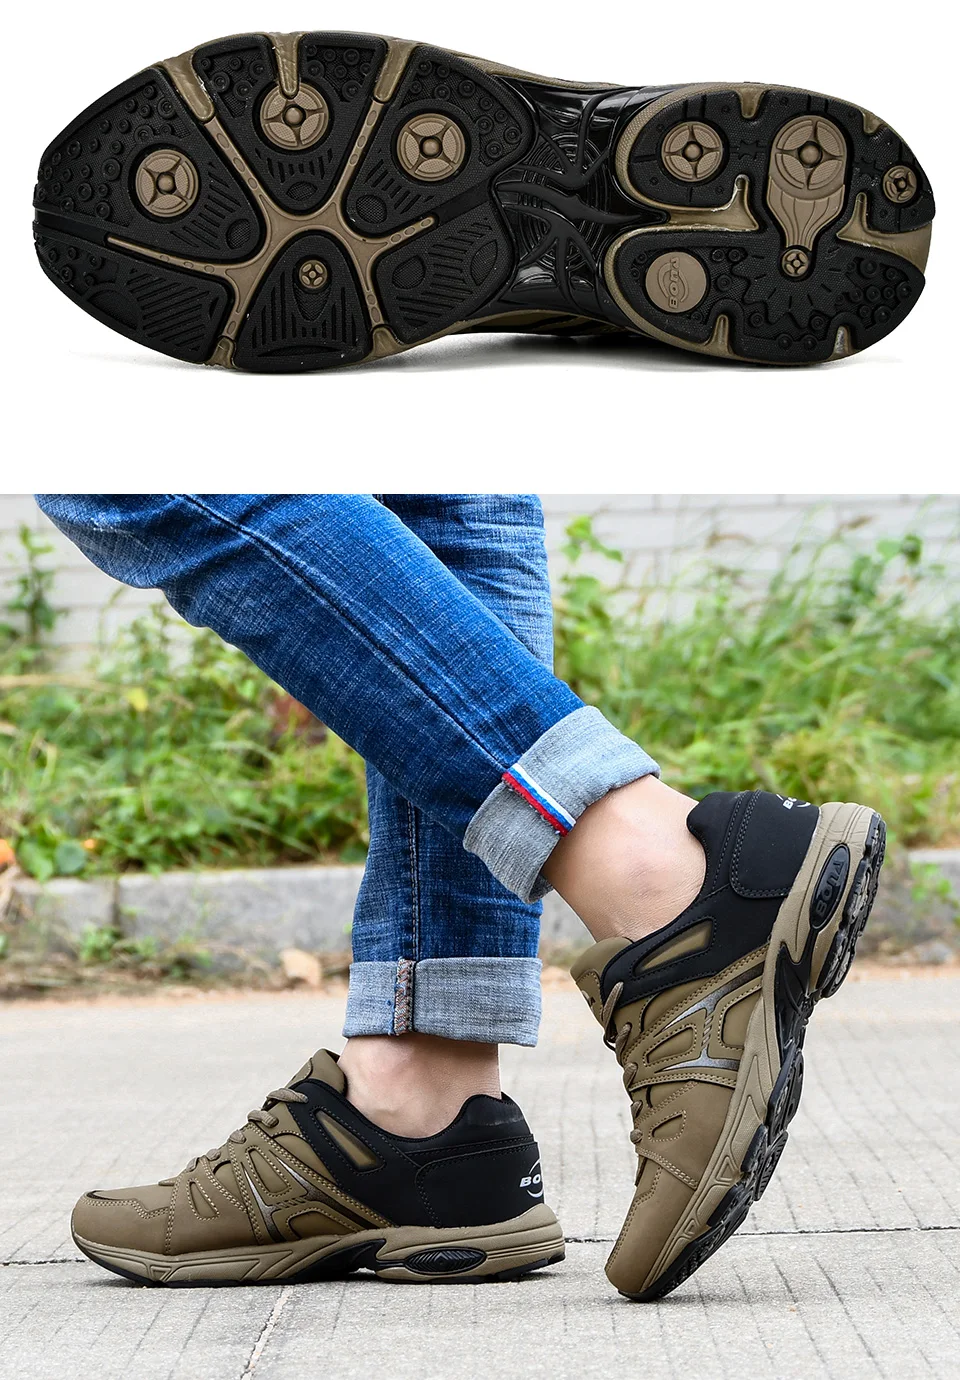 BONA/Легкая уличная спортивная обувь; мужские кроссовки; удобные беговые кожаные кроссовки для тенниса; мужские кроссовки для бега; удобные мужские кроссовки